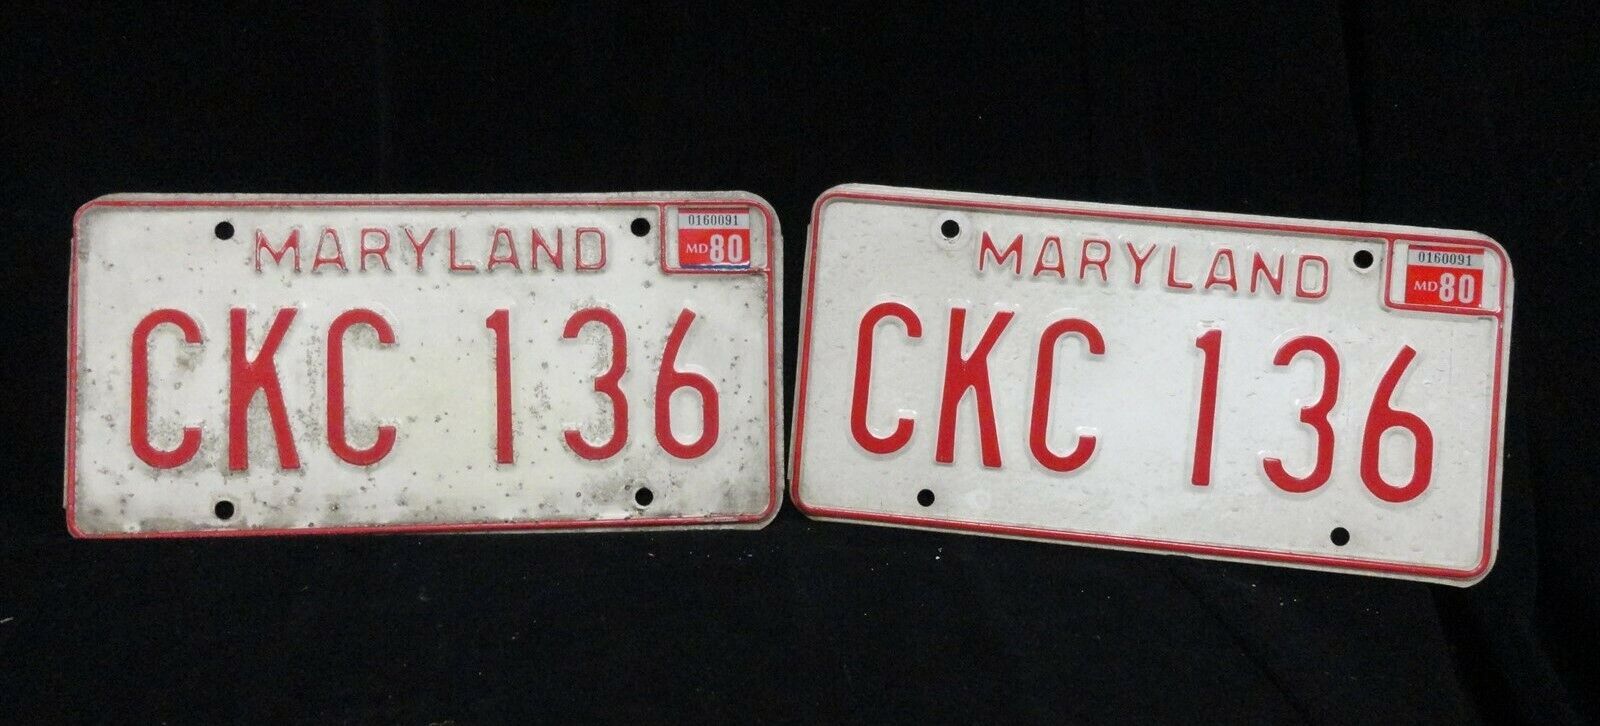 VINTAGE - Maryland ORIGINAL - 1980 LICENSE PLATES - Front and Back - CKC 136